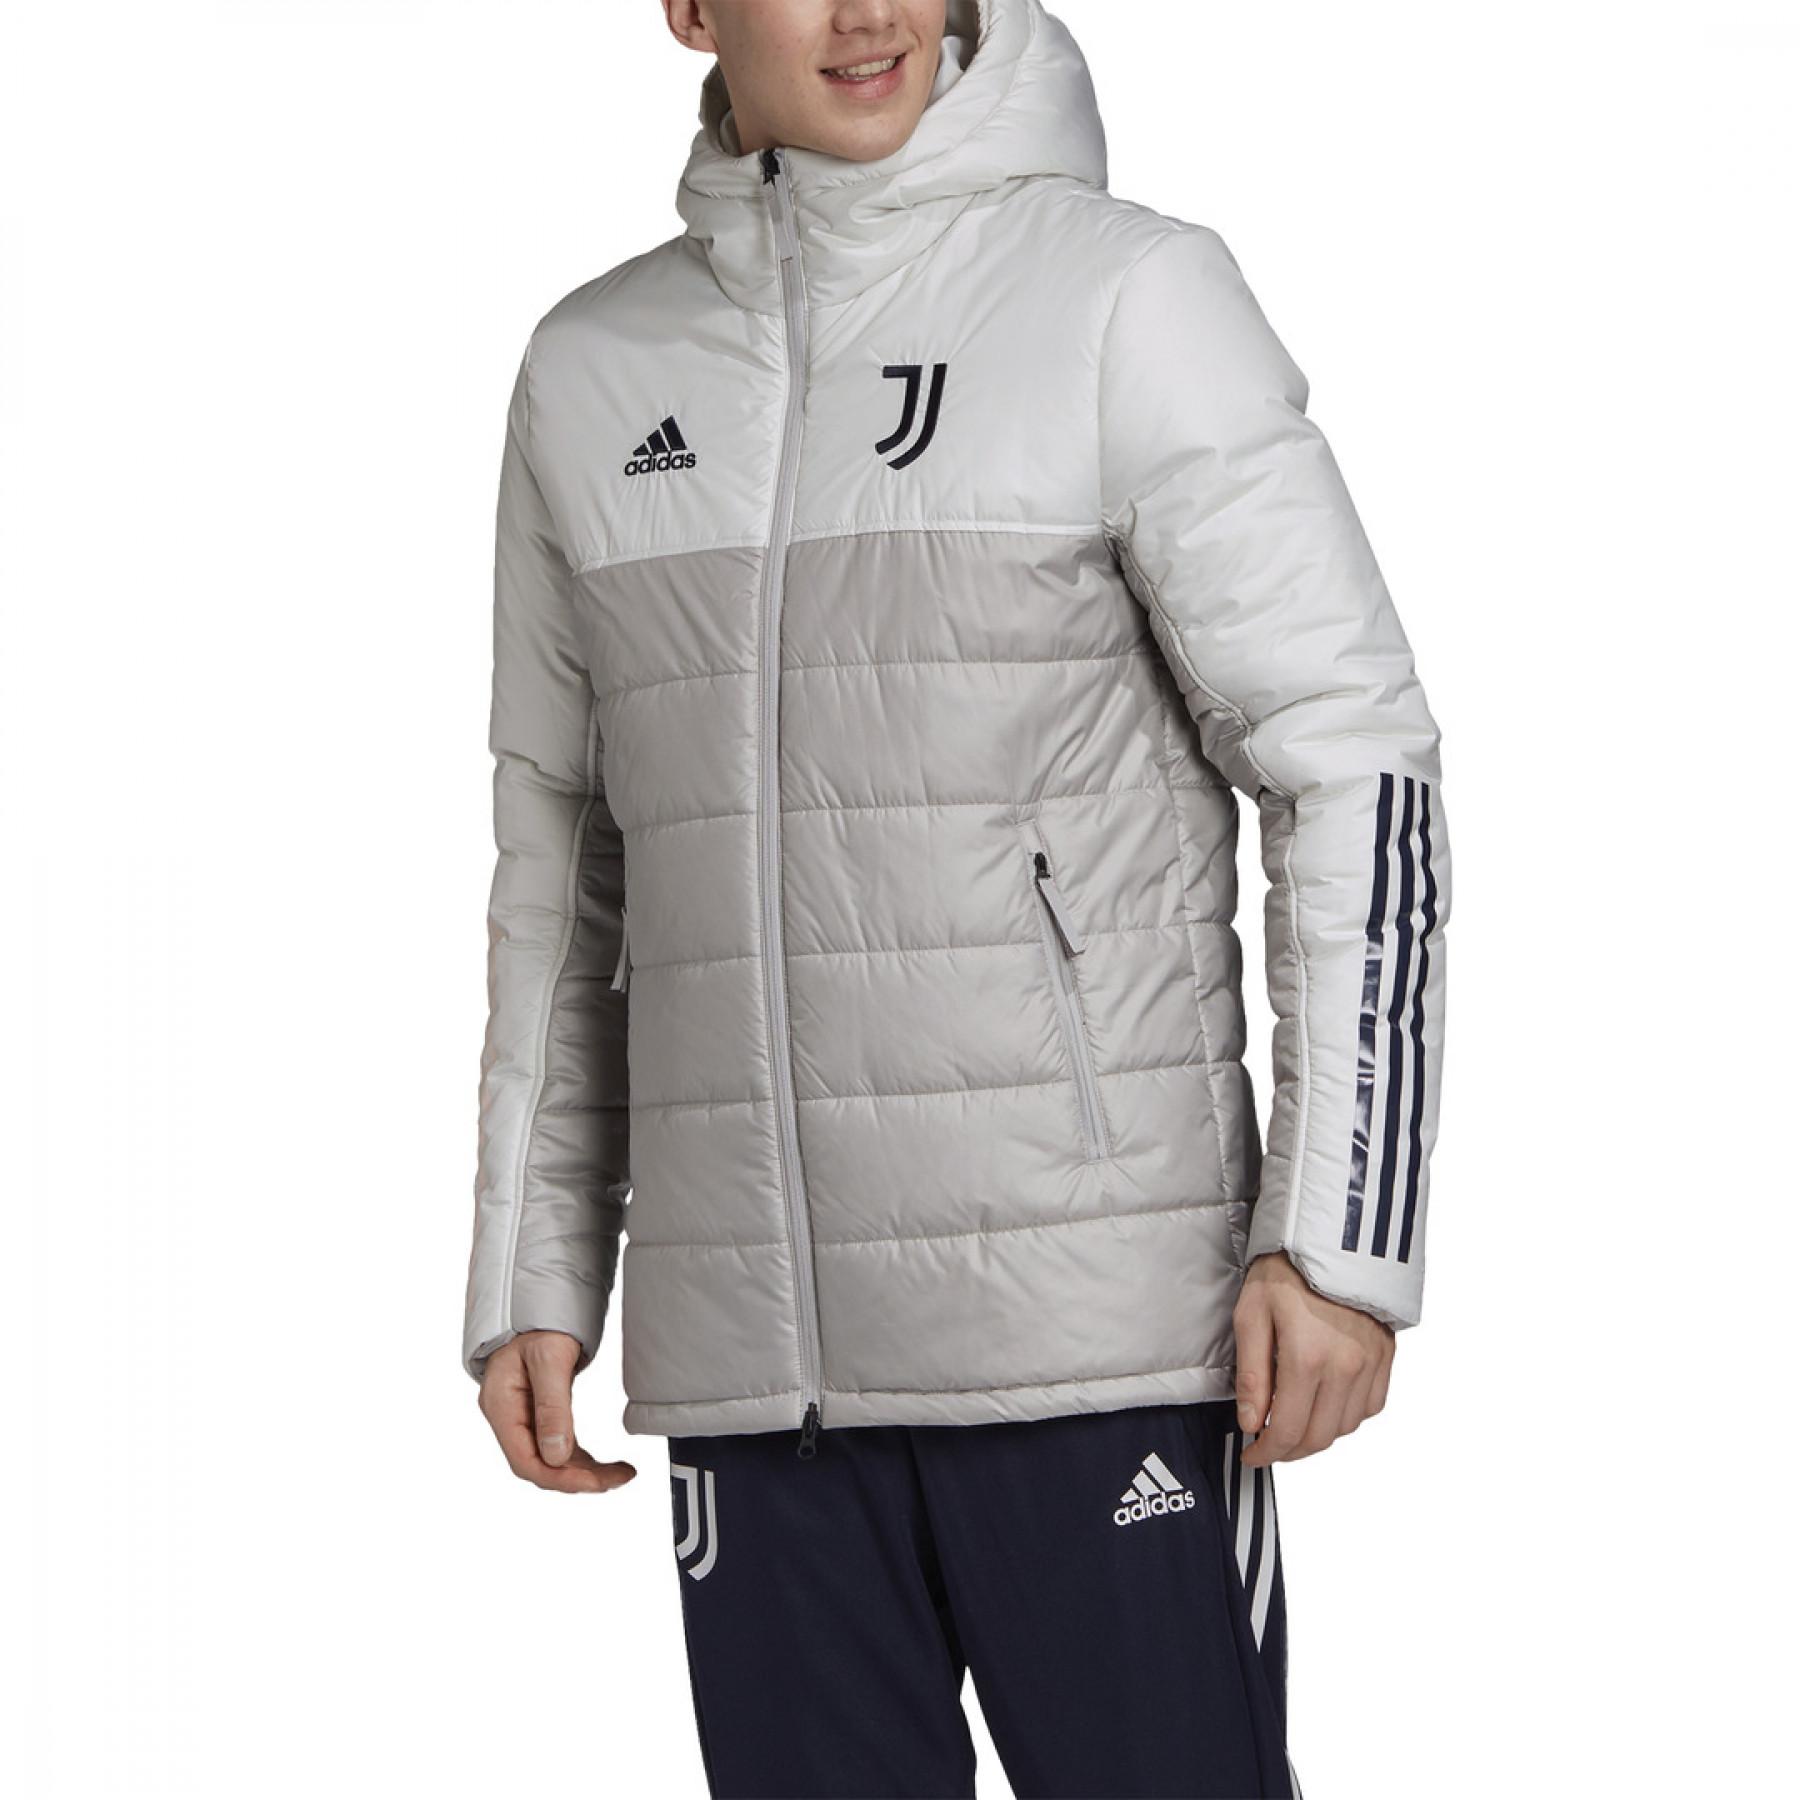 Down jacket Juventus